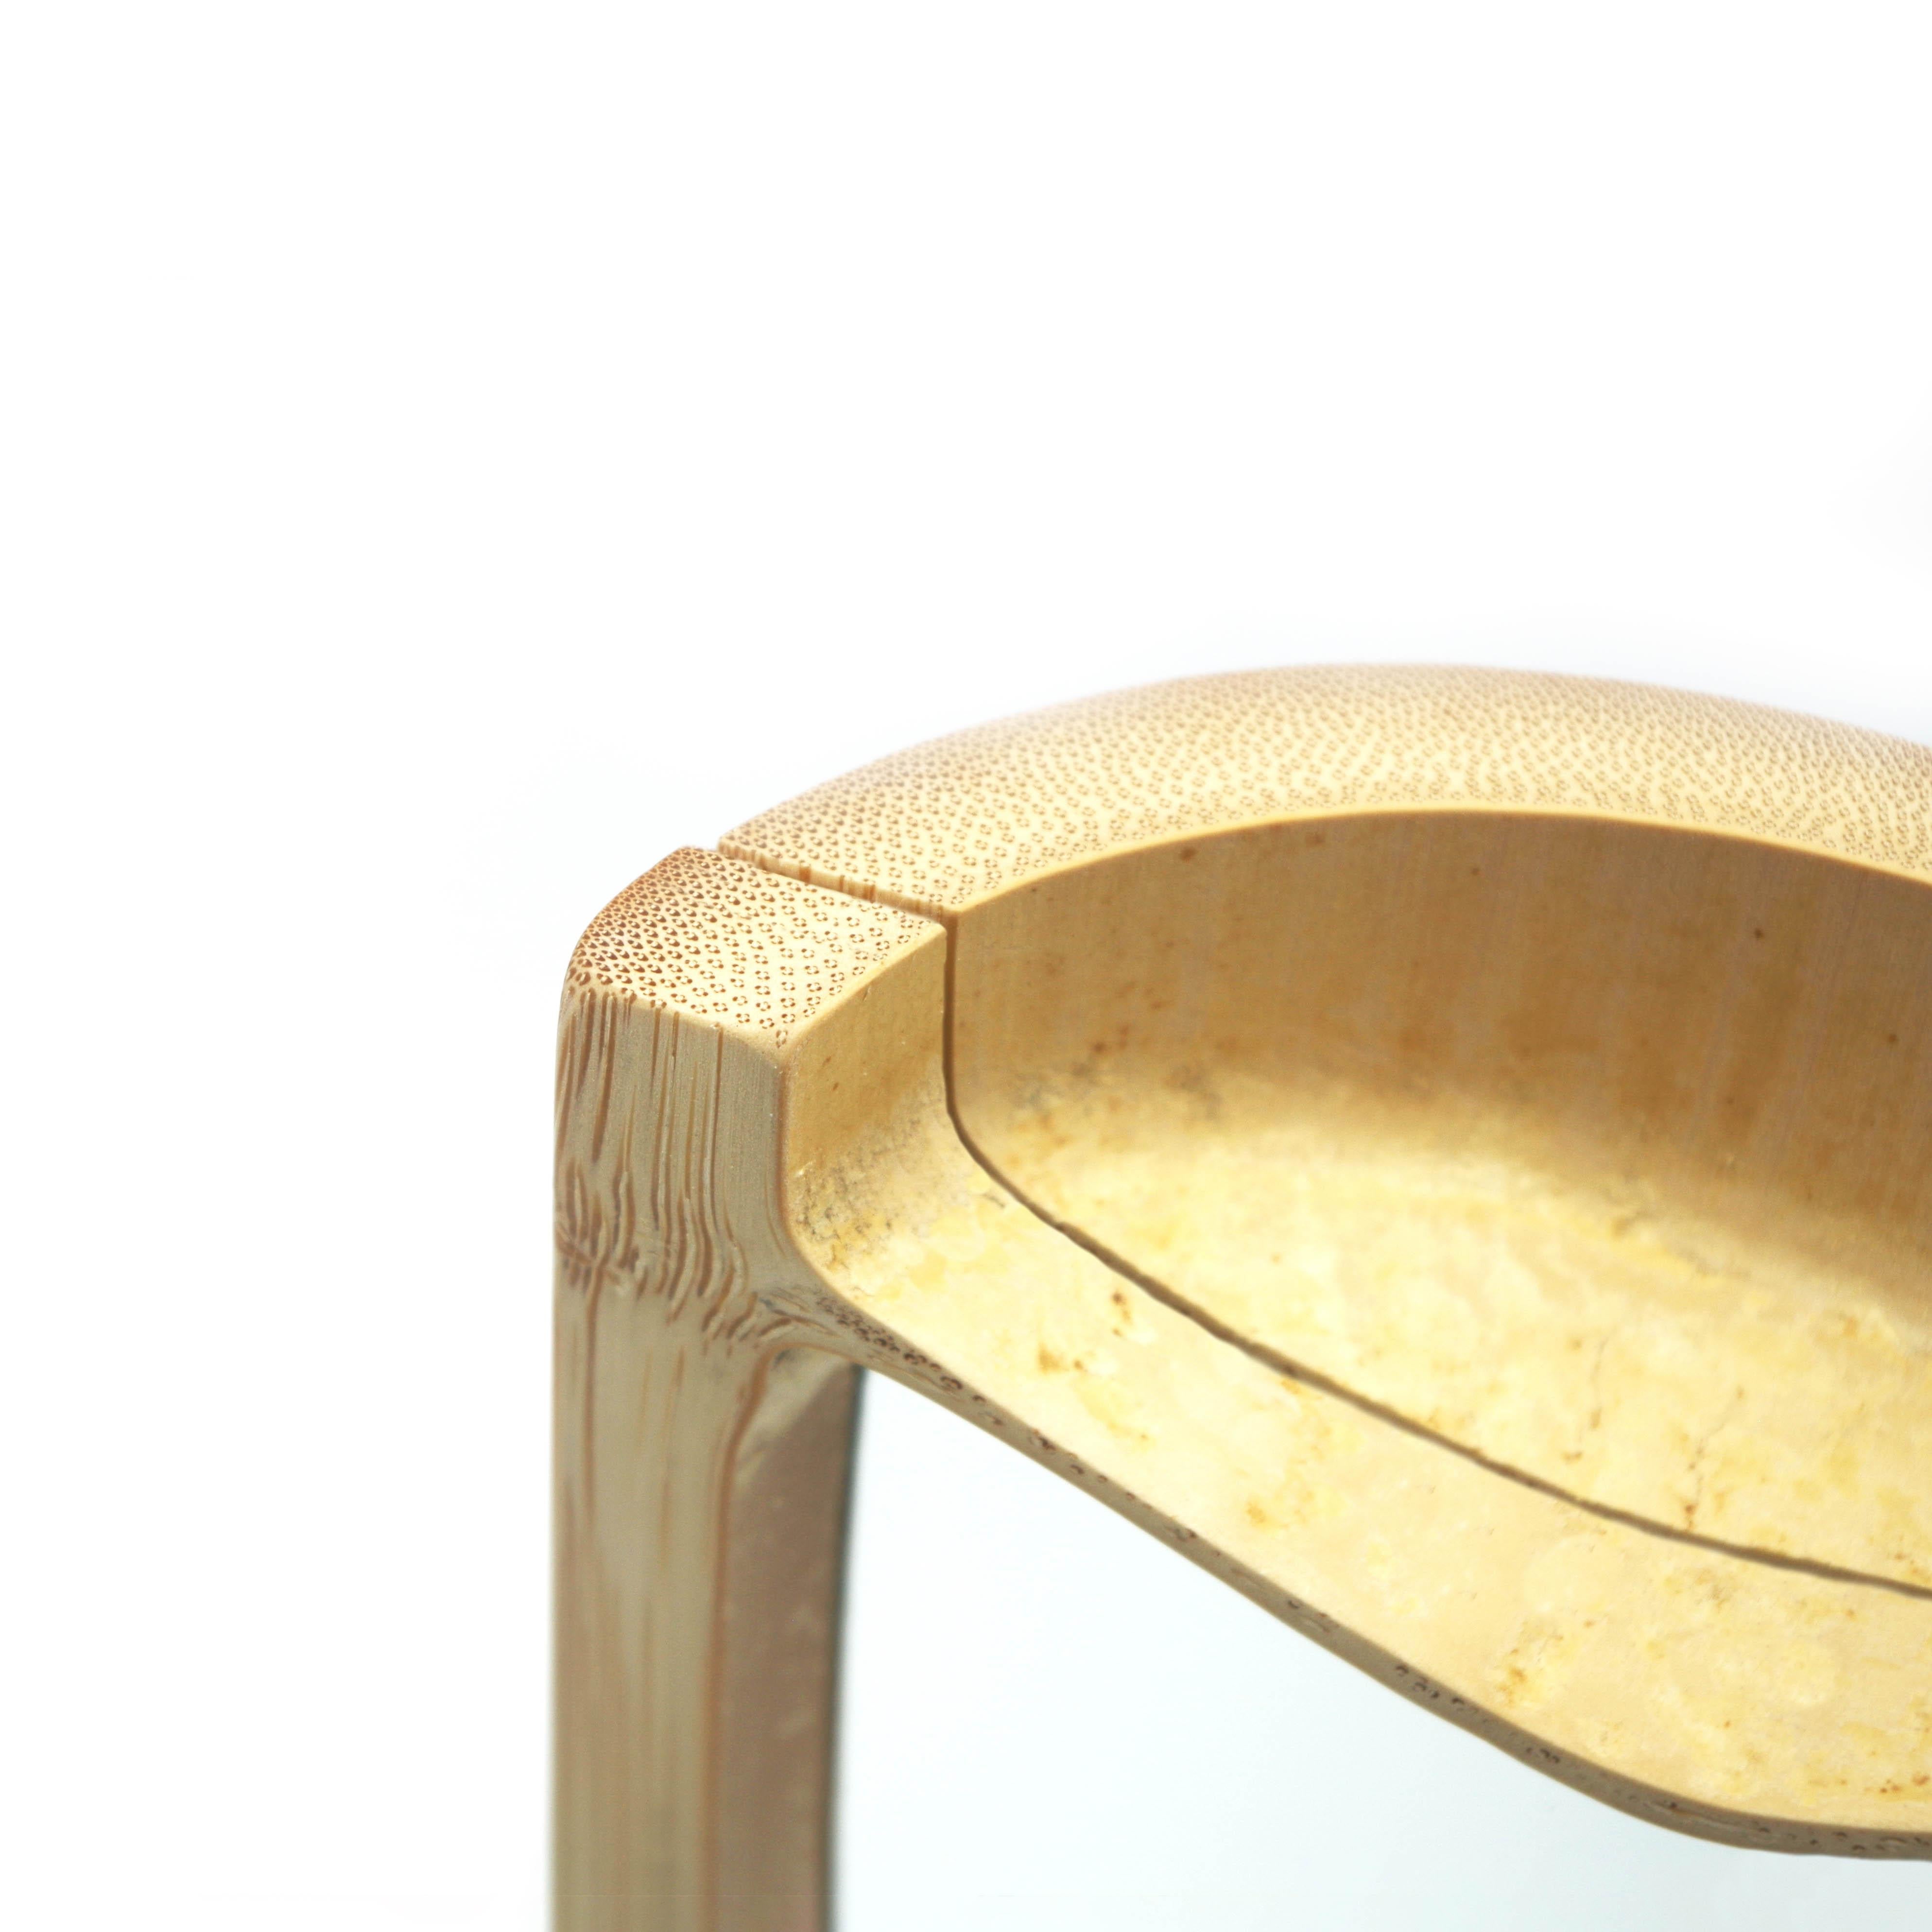 Prototype de miroir

Le bambou est un matériau exceptionnel qui offre une incroyable variété de formes et d'utilisations. Sa structure interne révèle un motif naturel intriguant. Cette collection de pièces uniques souhaite mettre à l'honneur ces